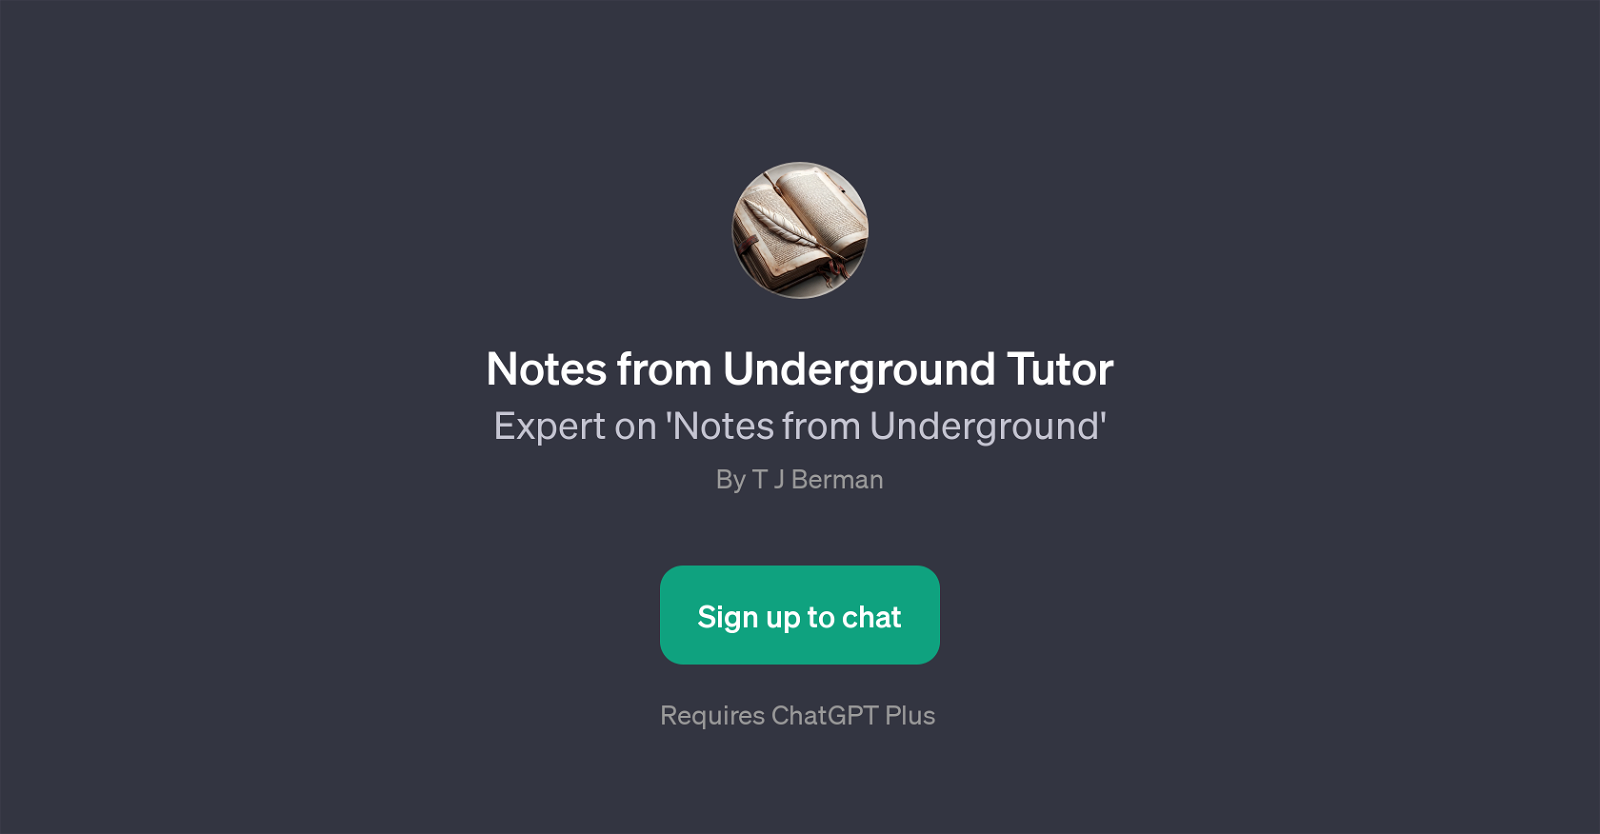 Notes from Underground Tutor website